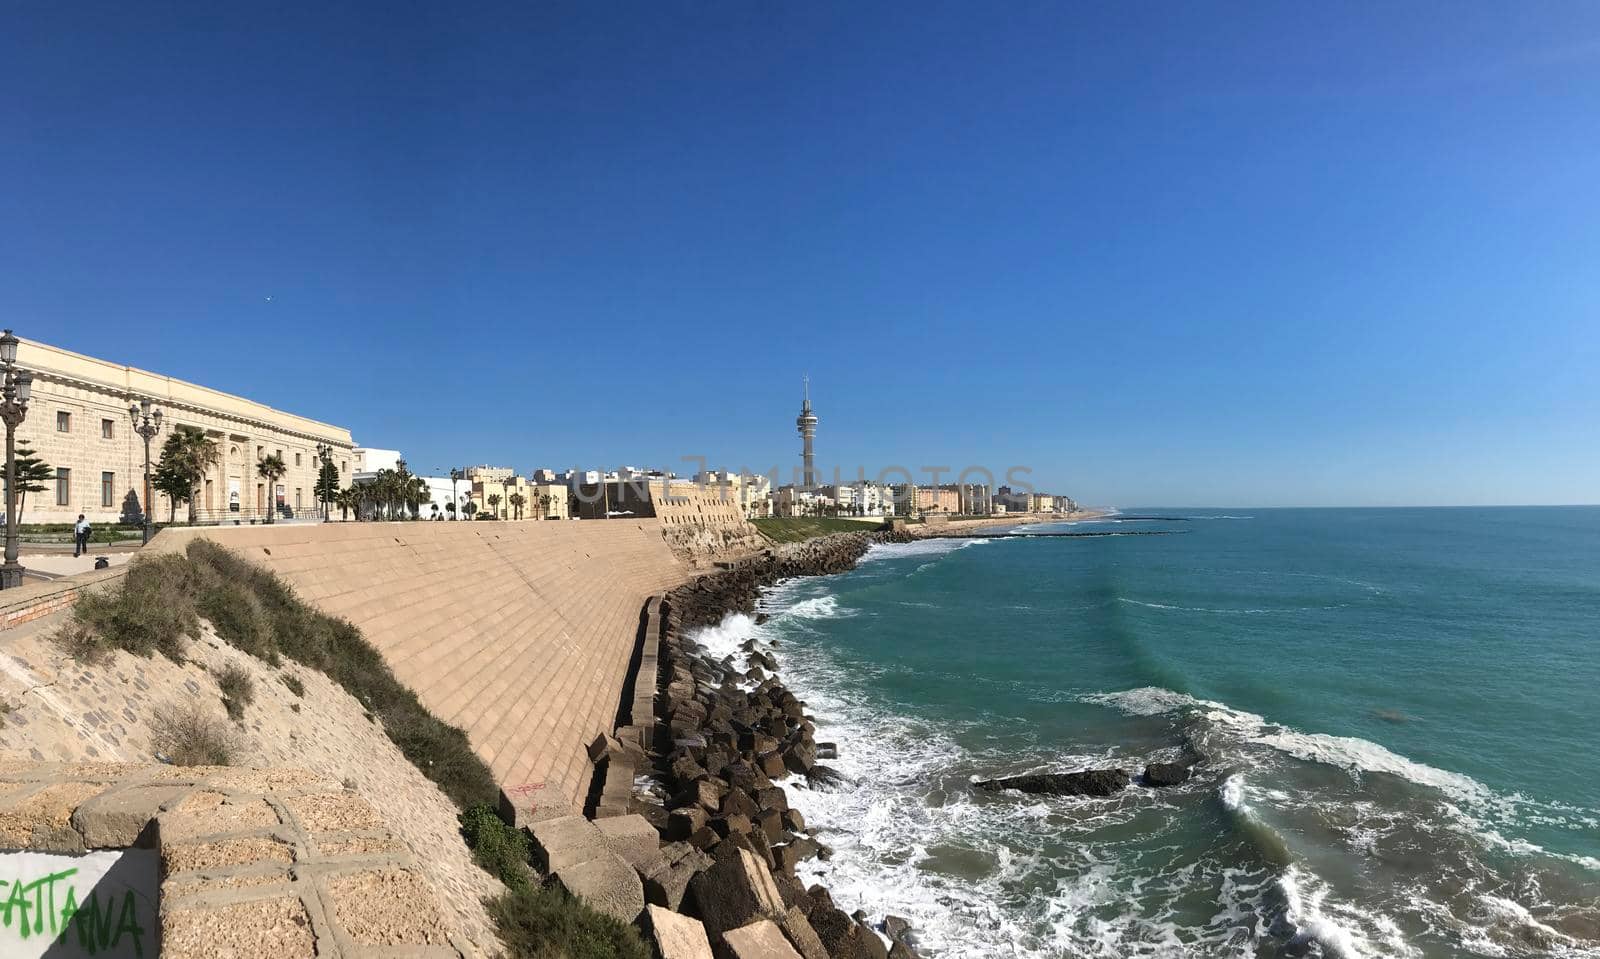 Panorama from the bay of Cadiz in Cadiz Spain